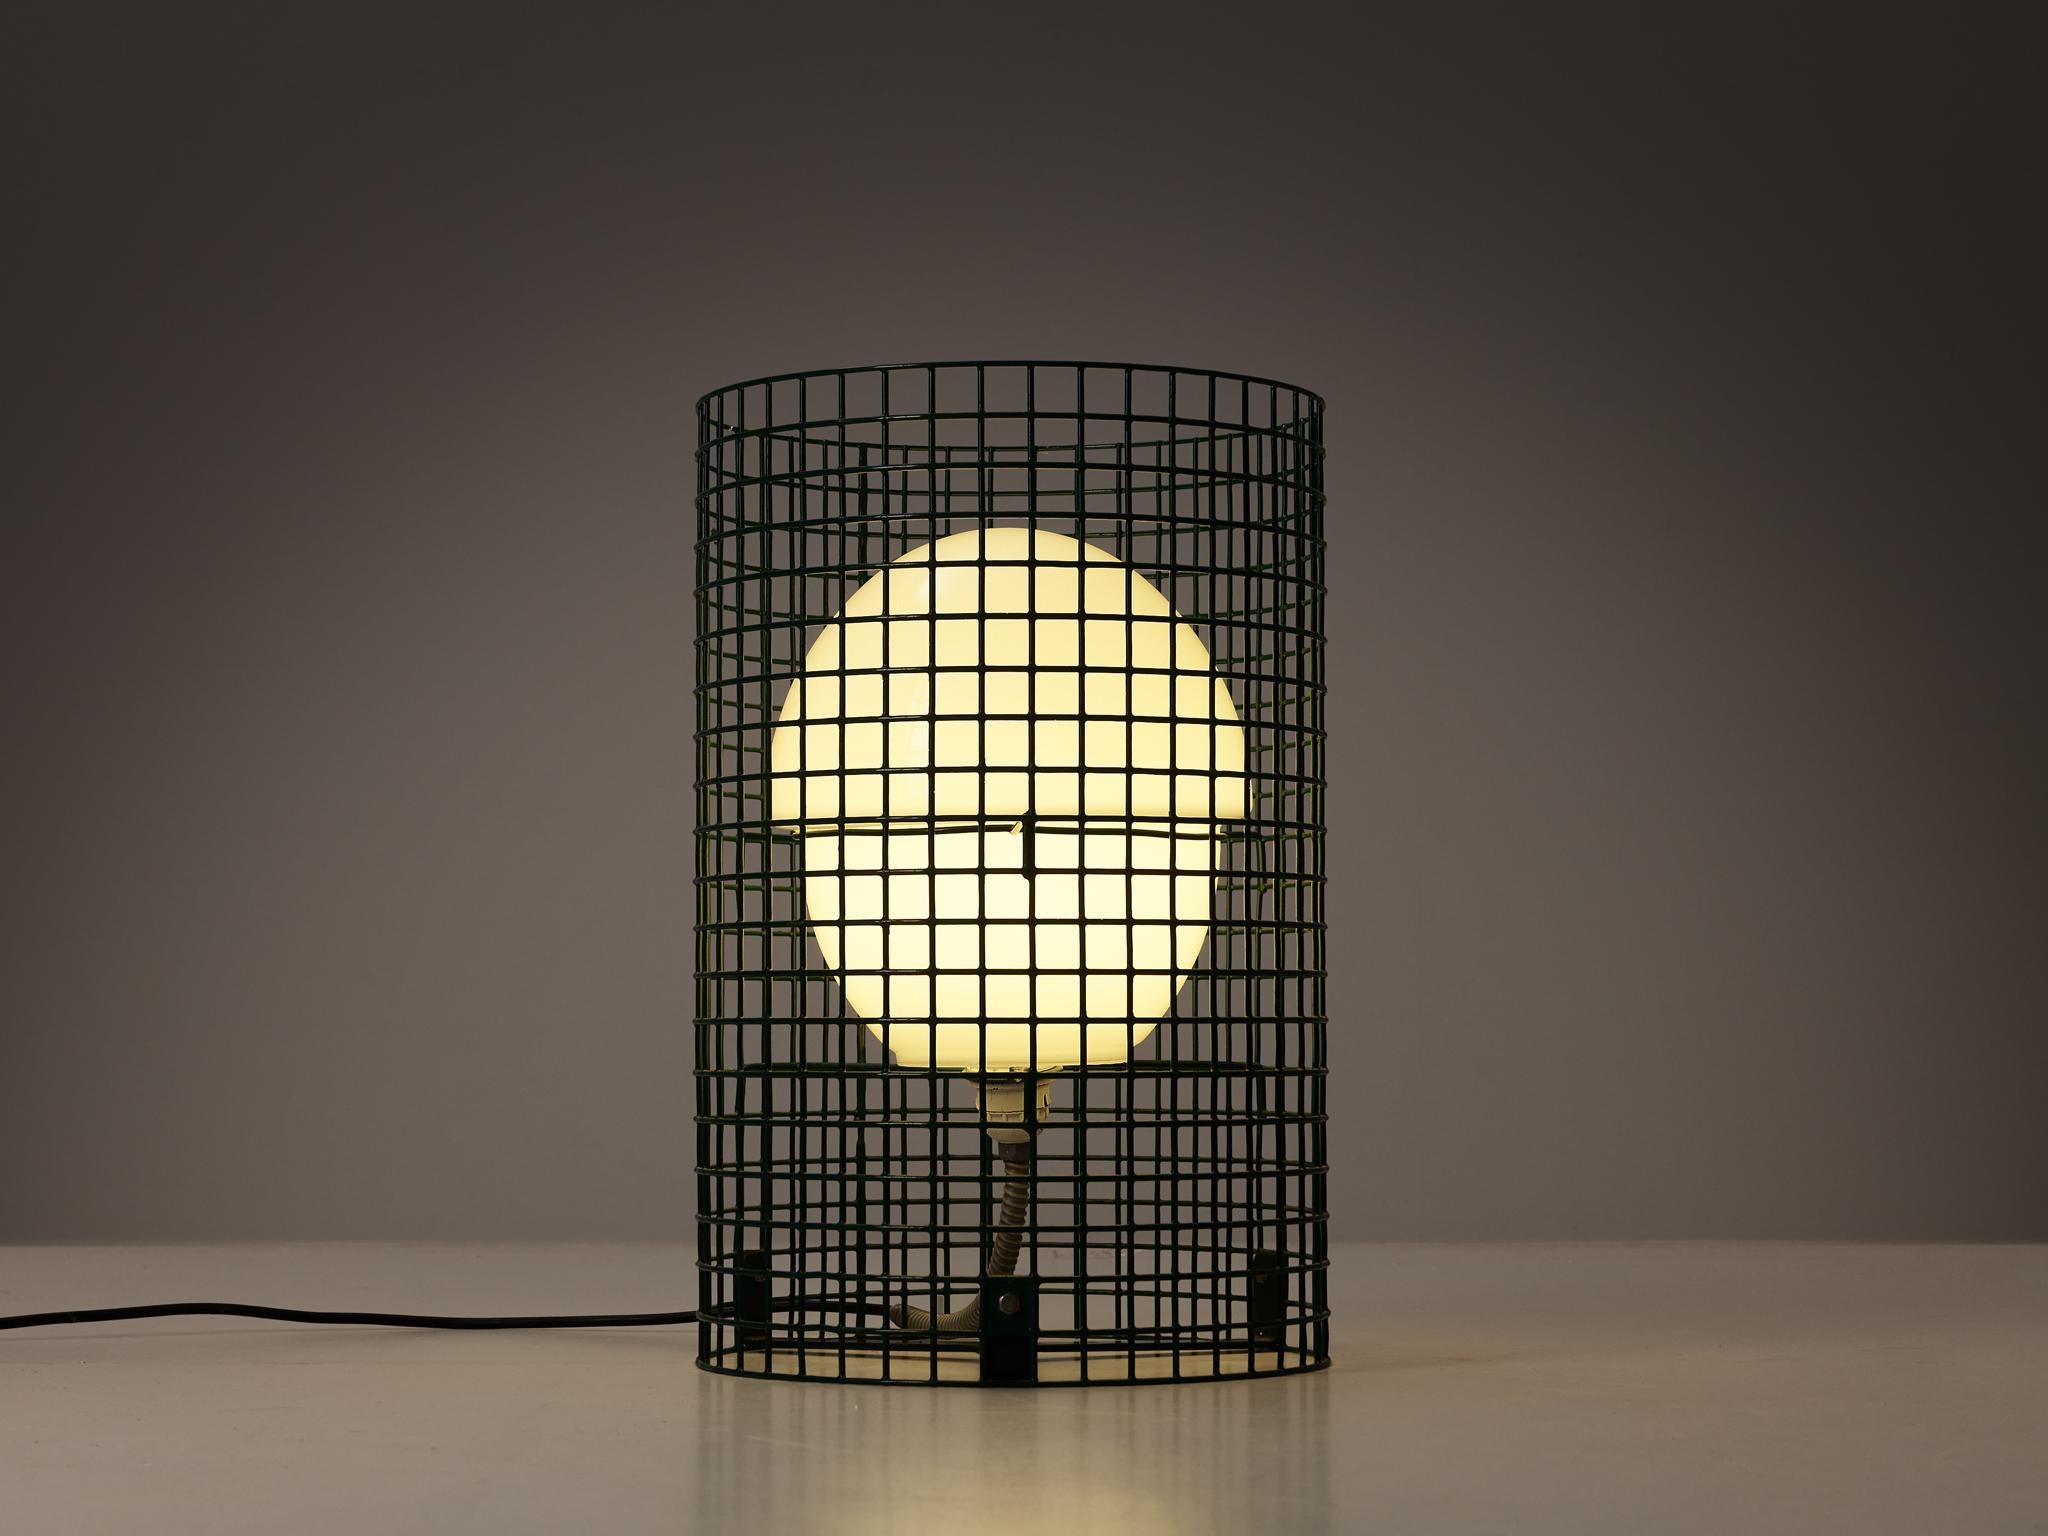 Gino Sarfatti pour Arteluce, lampadaire modèle 1102/D  Lampe de jardin, métal laqué, verre, Italie, 1975 

Le cadre de cette sculpture lumineuse excentrique est exécuté dans une maille métallique de couleur verte, un matériau qui a souvent été